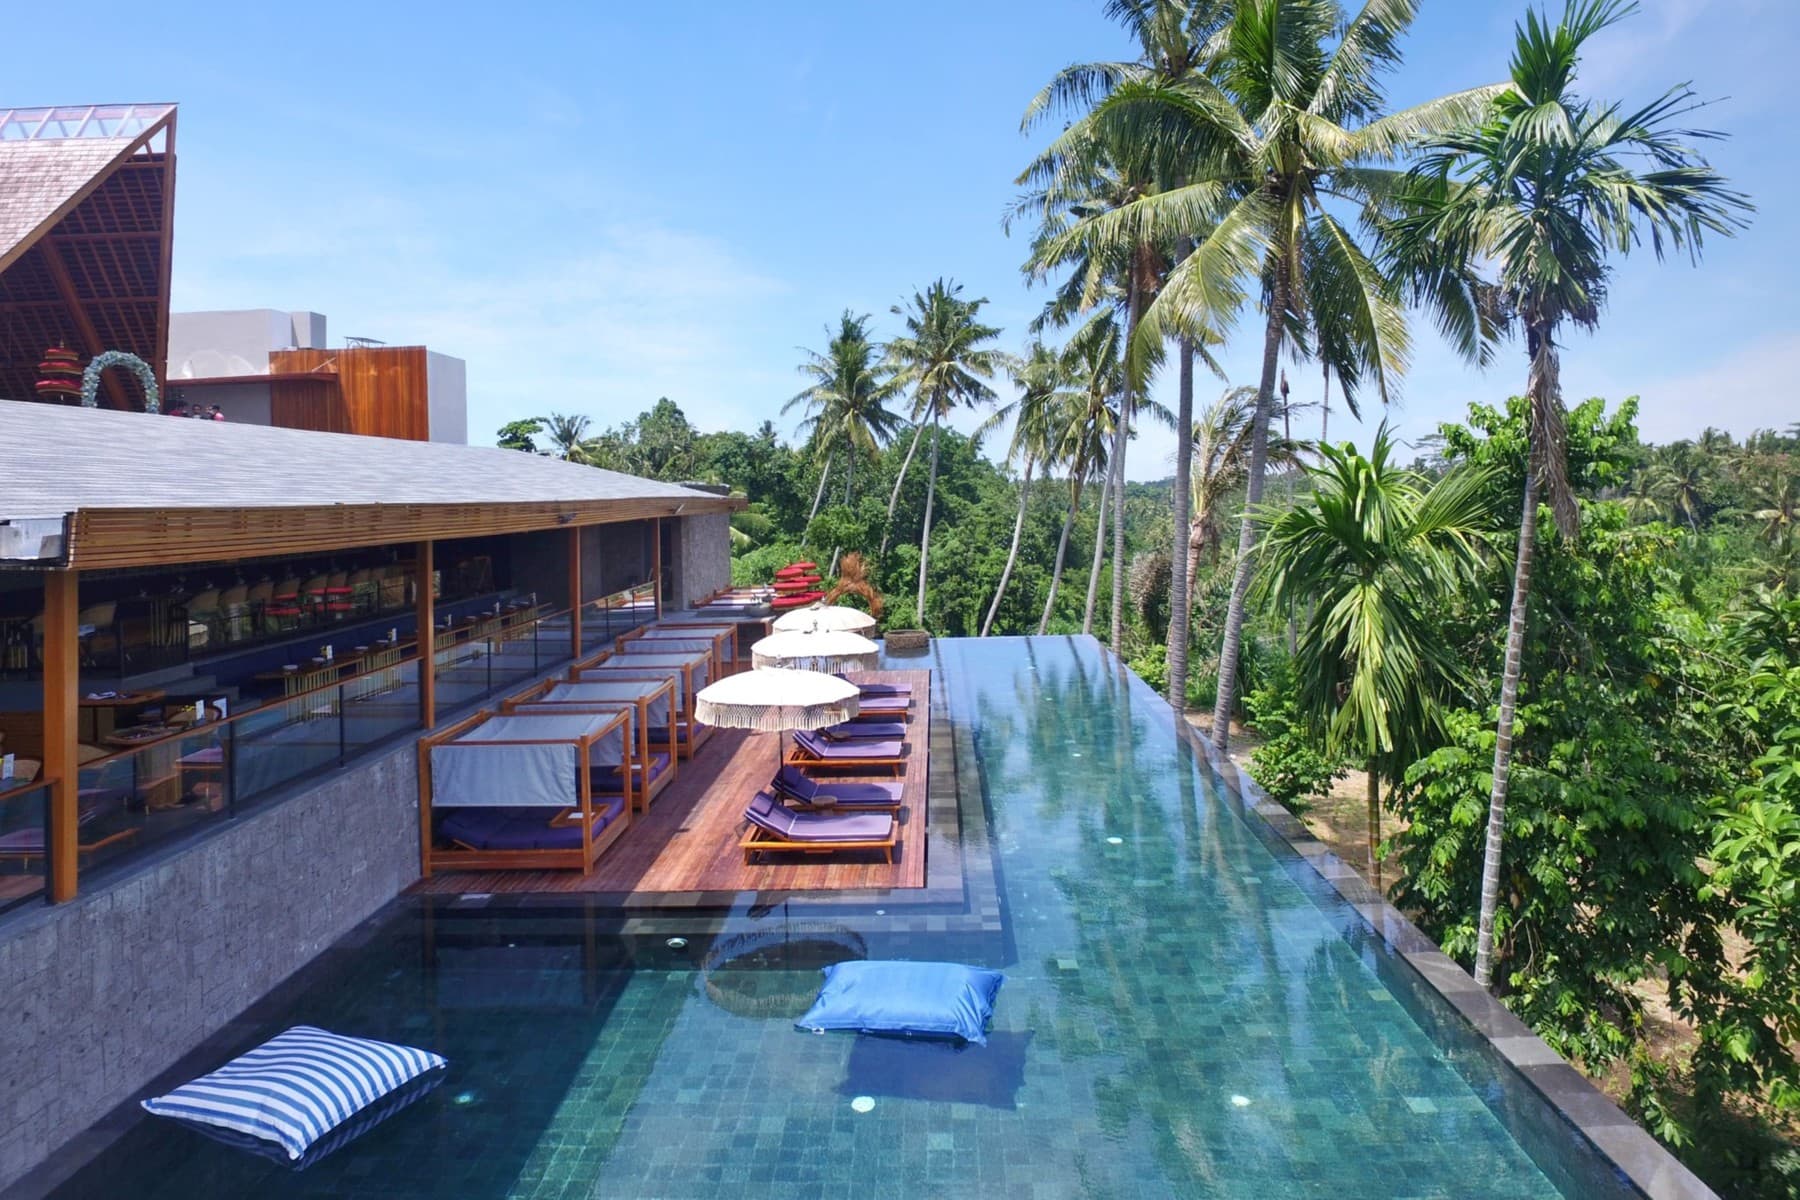 The best hotel deals in Bali - Bali Finder